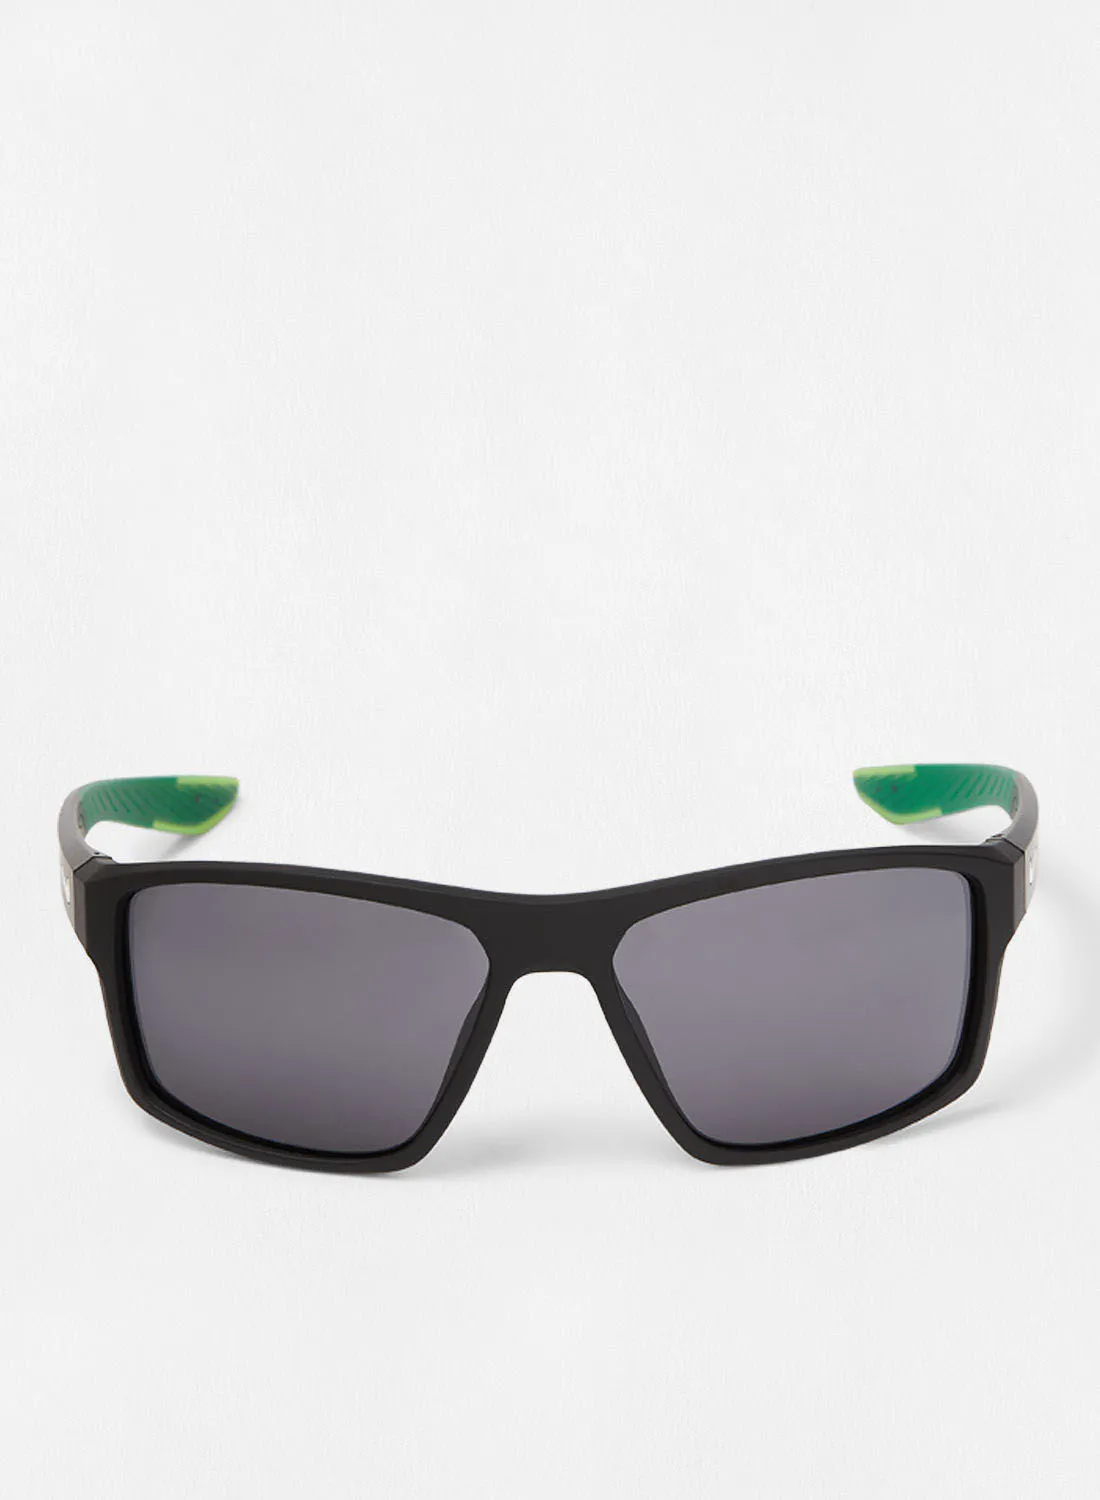 Nike Men's UV Protection Rectangular Sunglasses - Lens Size: 60 mm